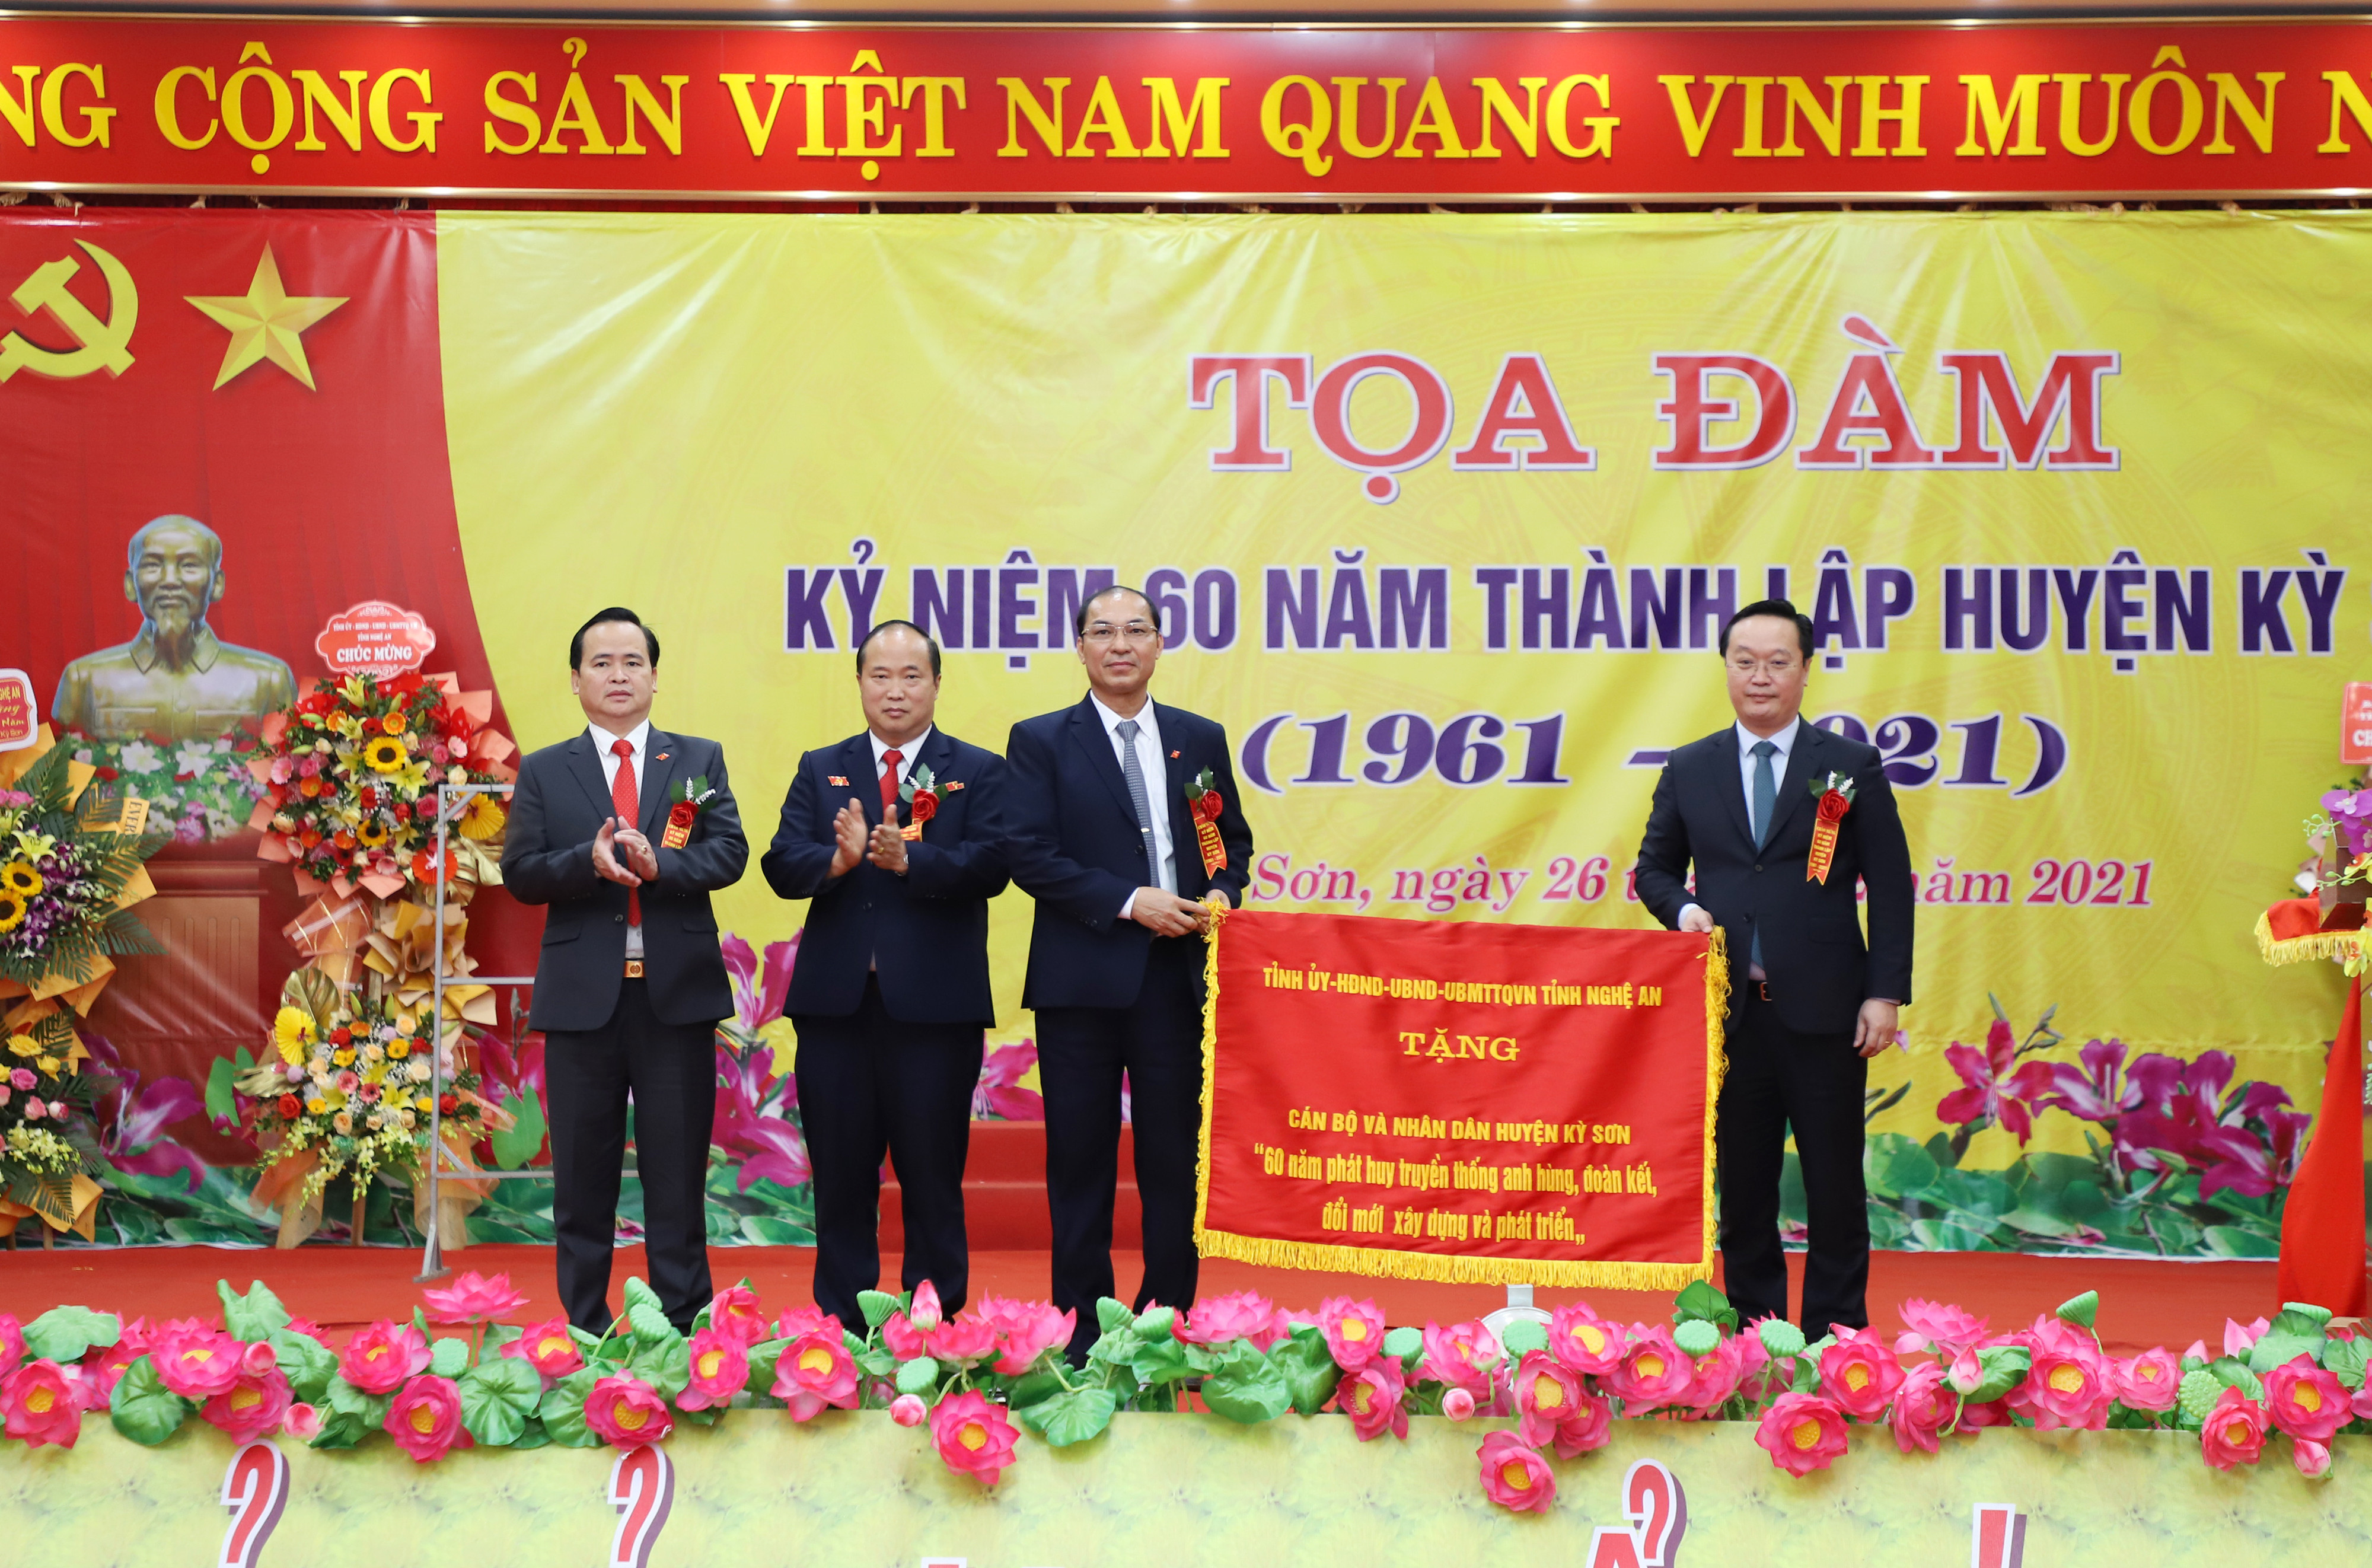 Đồng chí Nguyễn Đức Trung - Chủ tịch UBND tỉnh trao Bức trước của tặng cho huyện Kỳ Sơn. Ảnh: Phạm Bằng